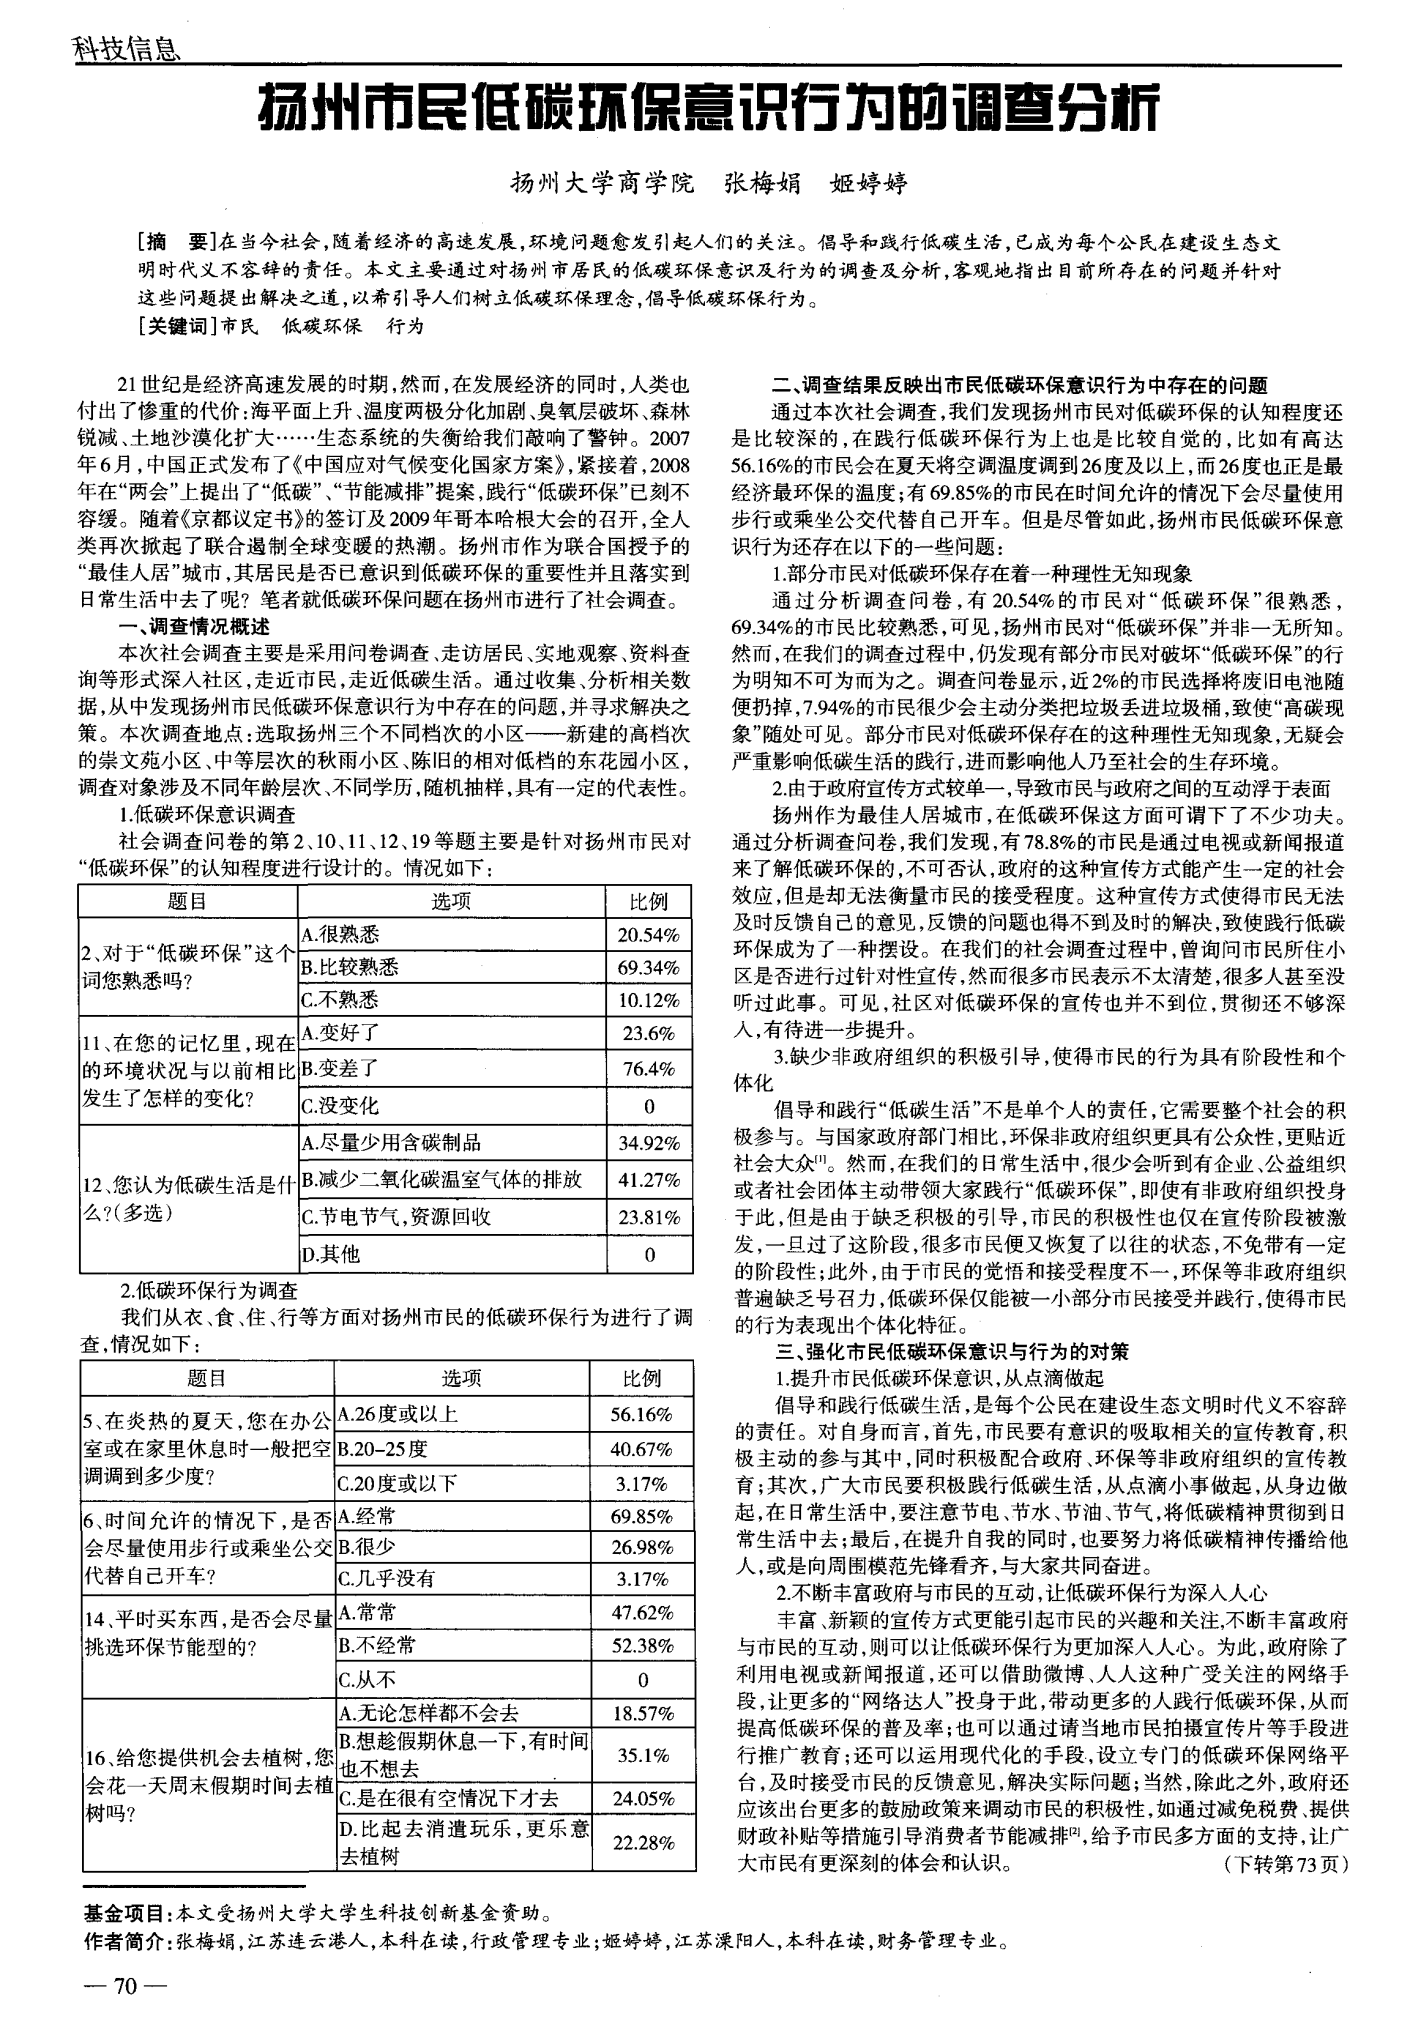 扬州市民低碳环保意识行为的调查分析